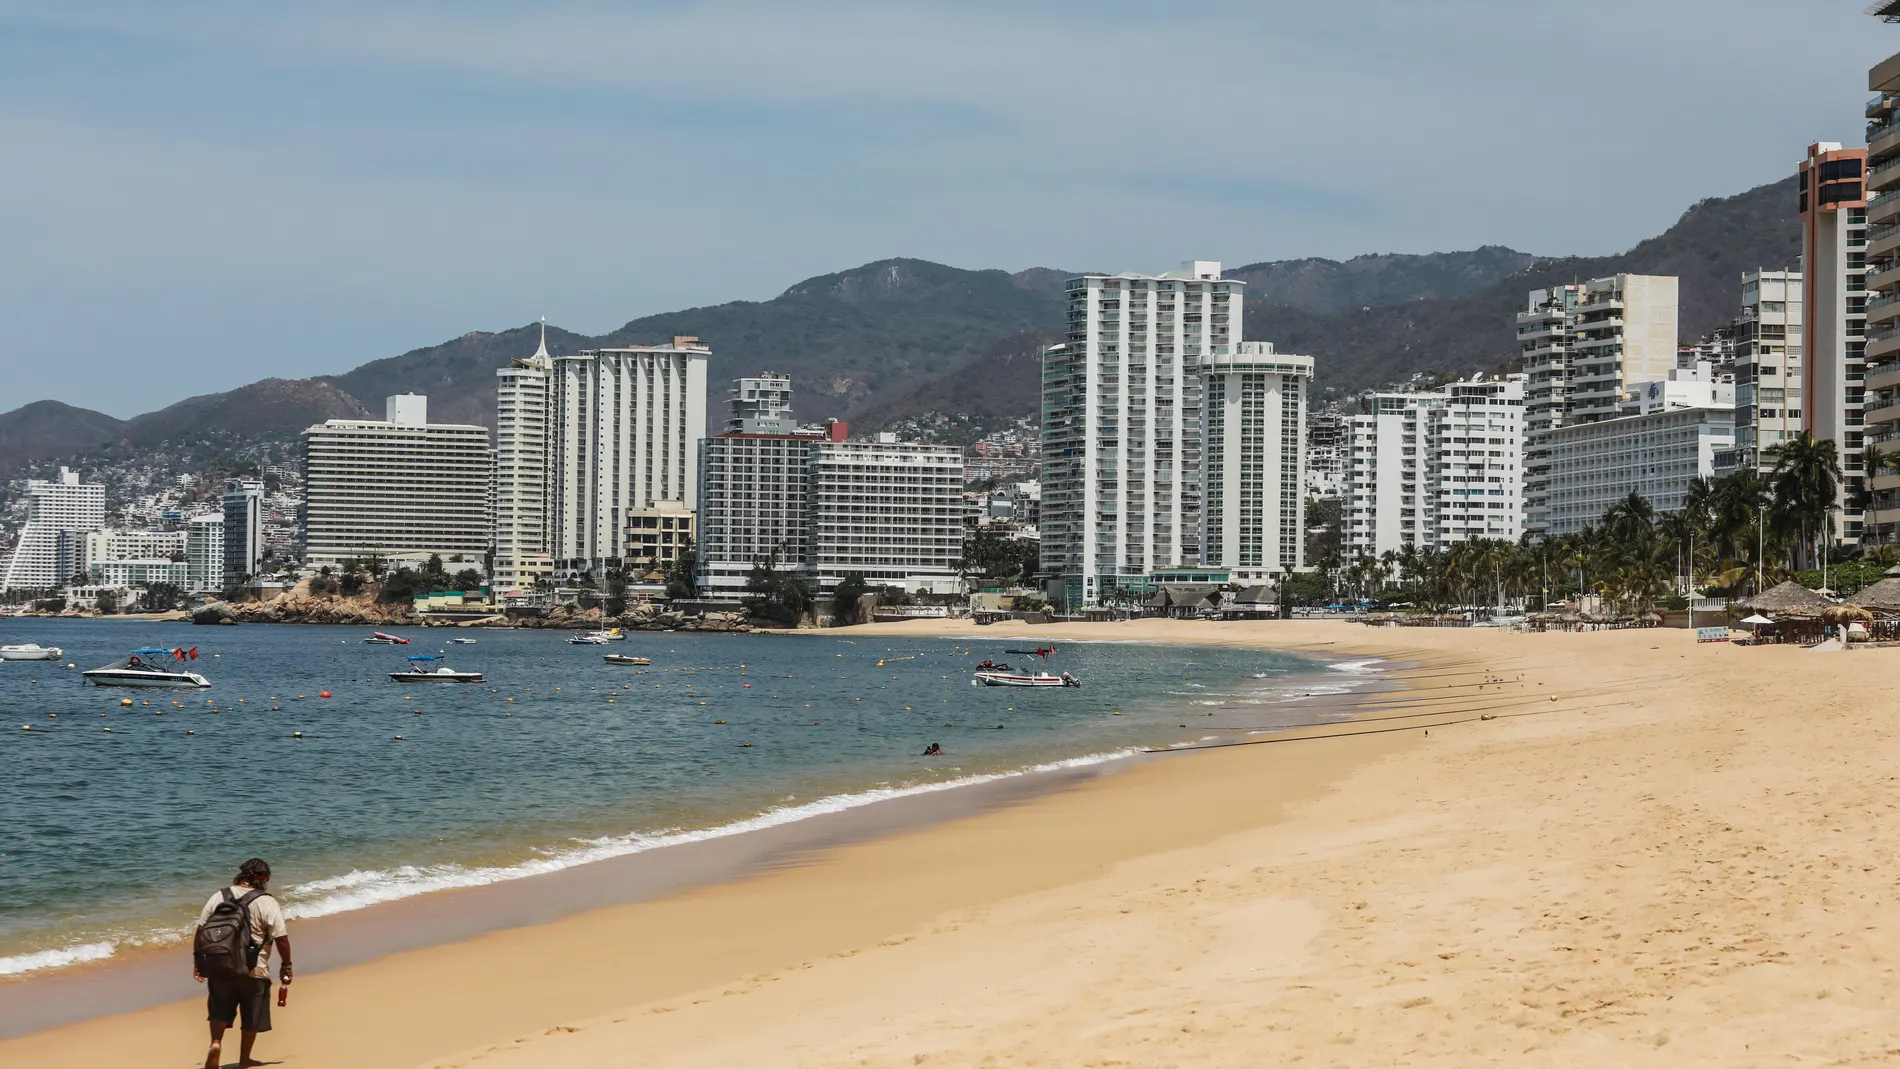 Playas y parques de diversiones lucen desolados en balneario de Acapulco